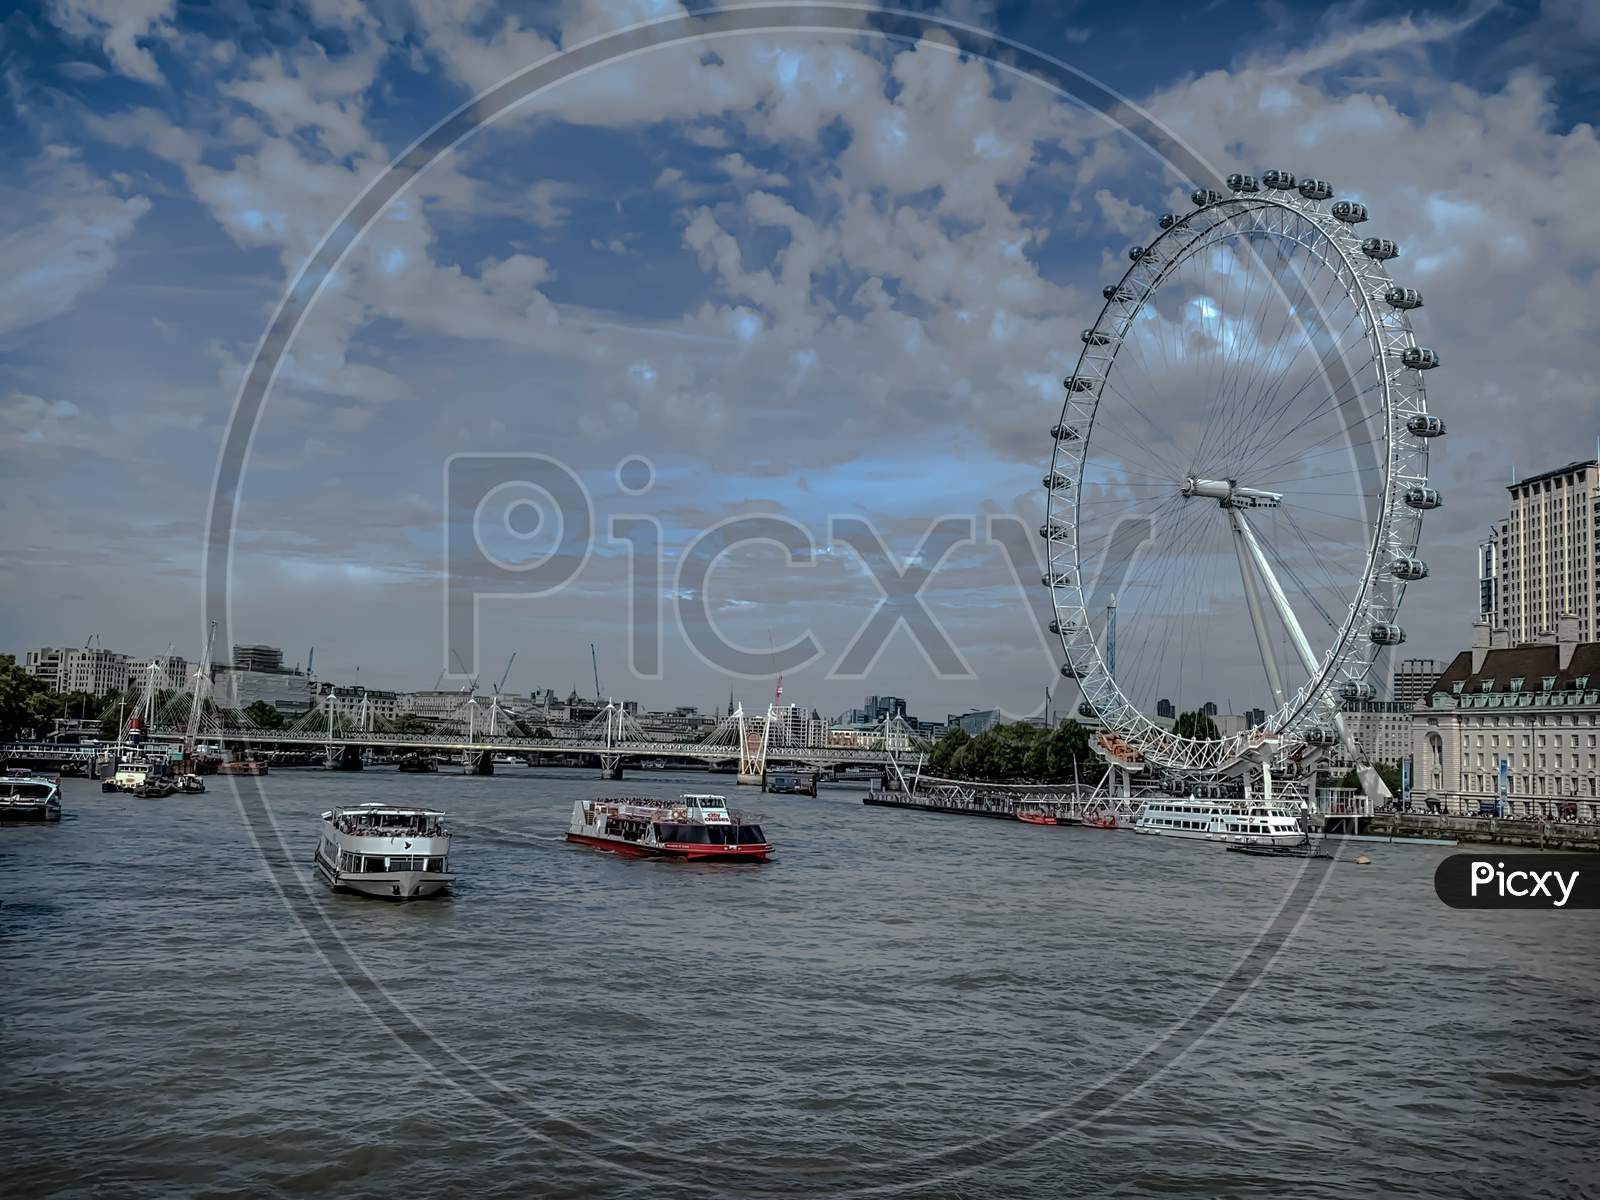 Landscape of London Eye